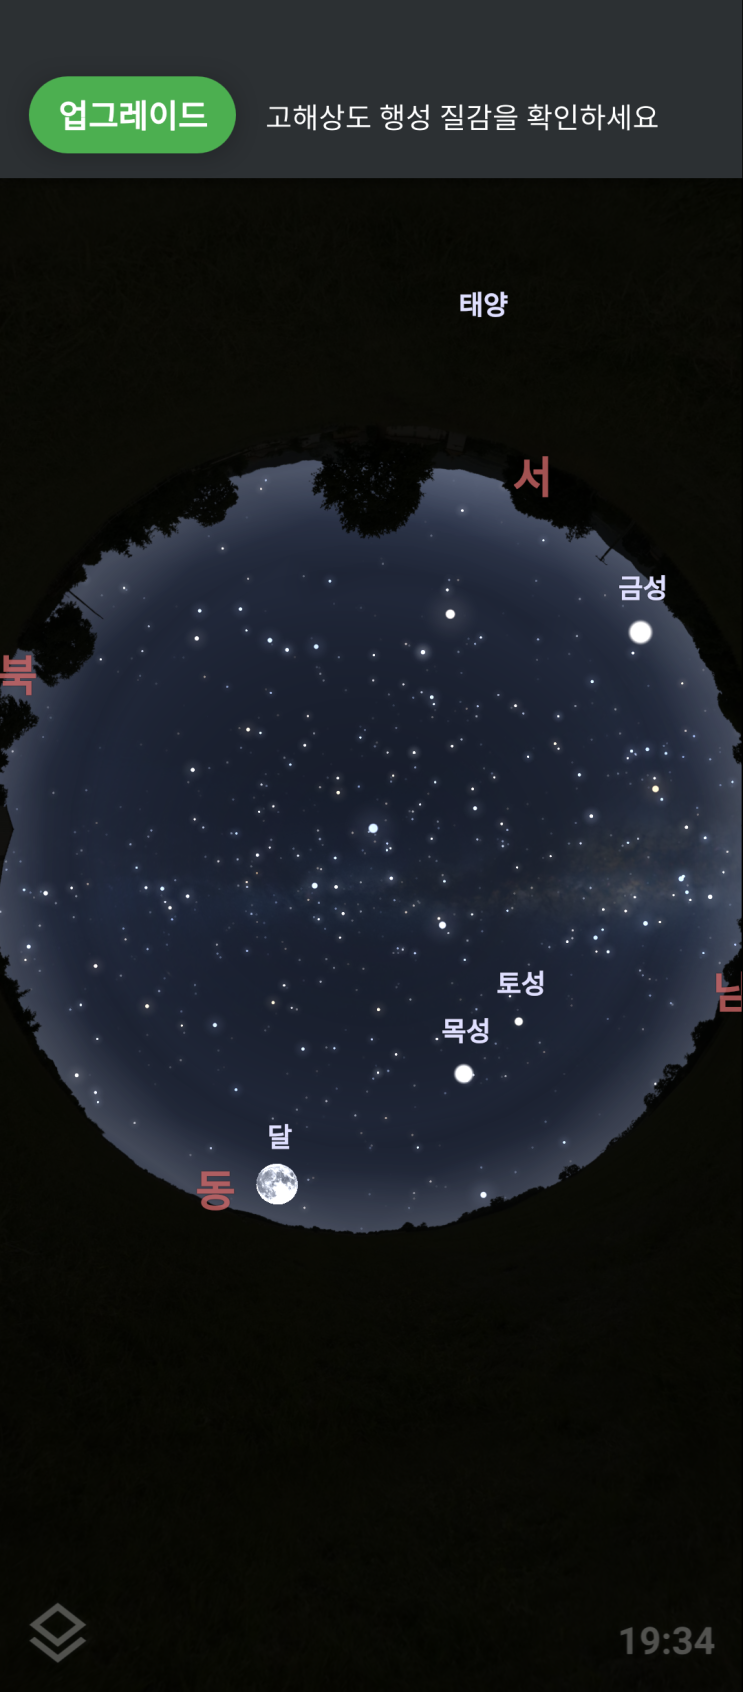 별자리와 우주 관측? '스텔라리움'(Stellarium)앱을 추천합니다! 별린이의 고민 해결!